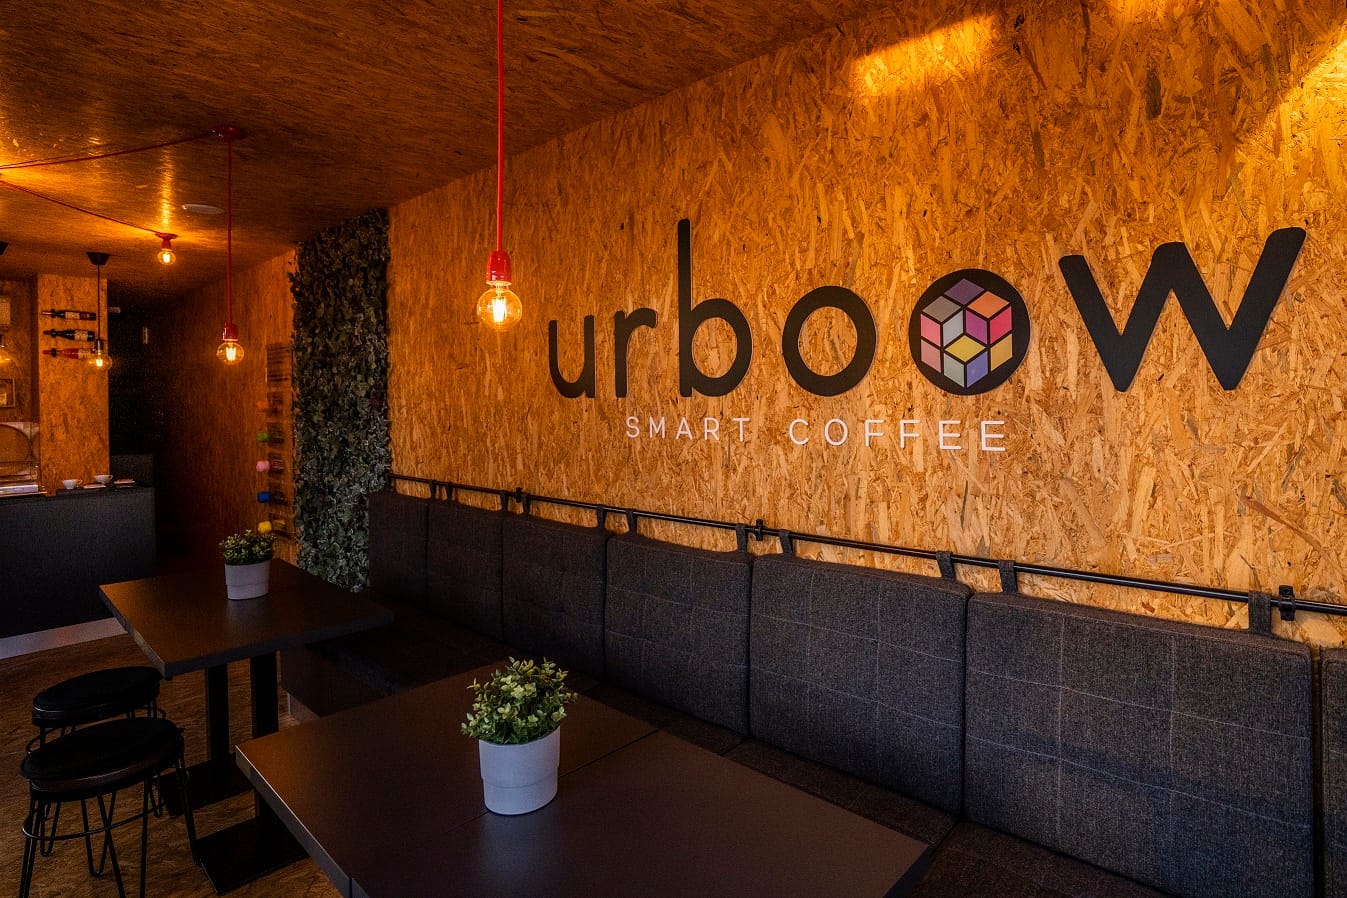 Urboow_smart_coffee6